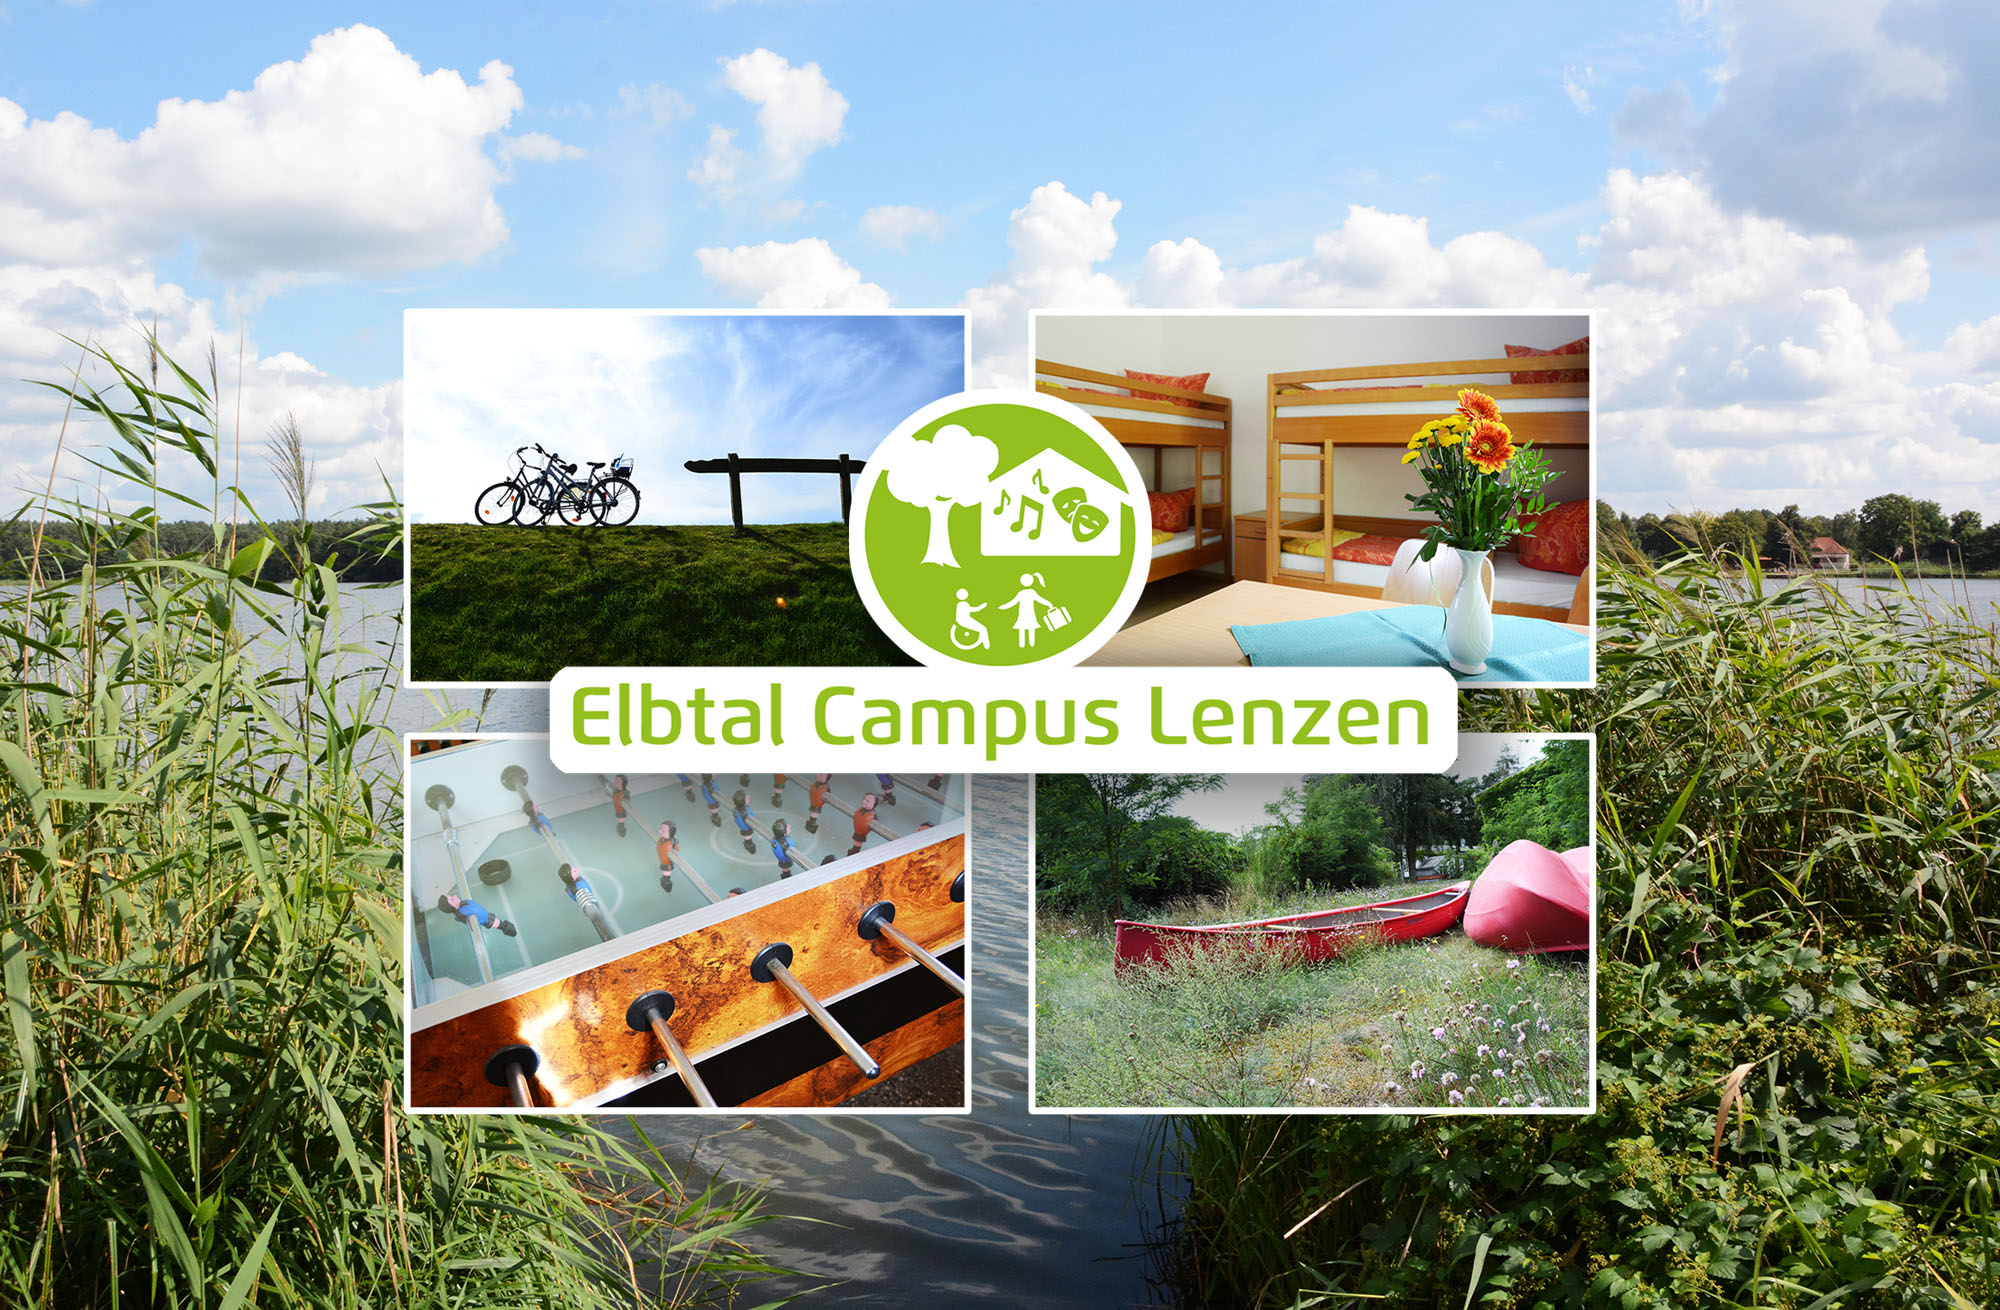 Buchen Sie Klassenfahrten, Familienfahrten und Gruppenreisen online im Elbtal Campus in Lenzen zwischen Berlin und Hamburg